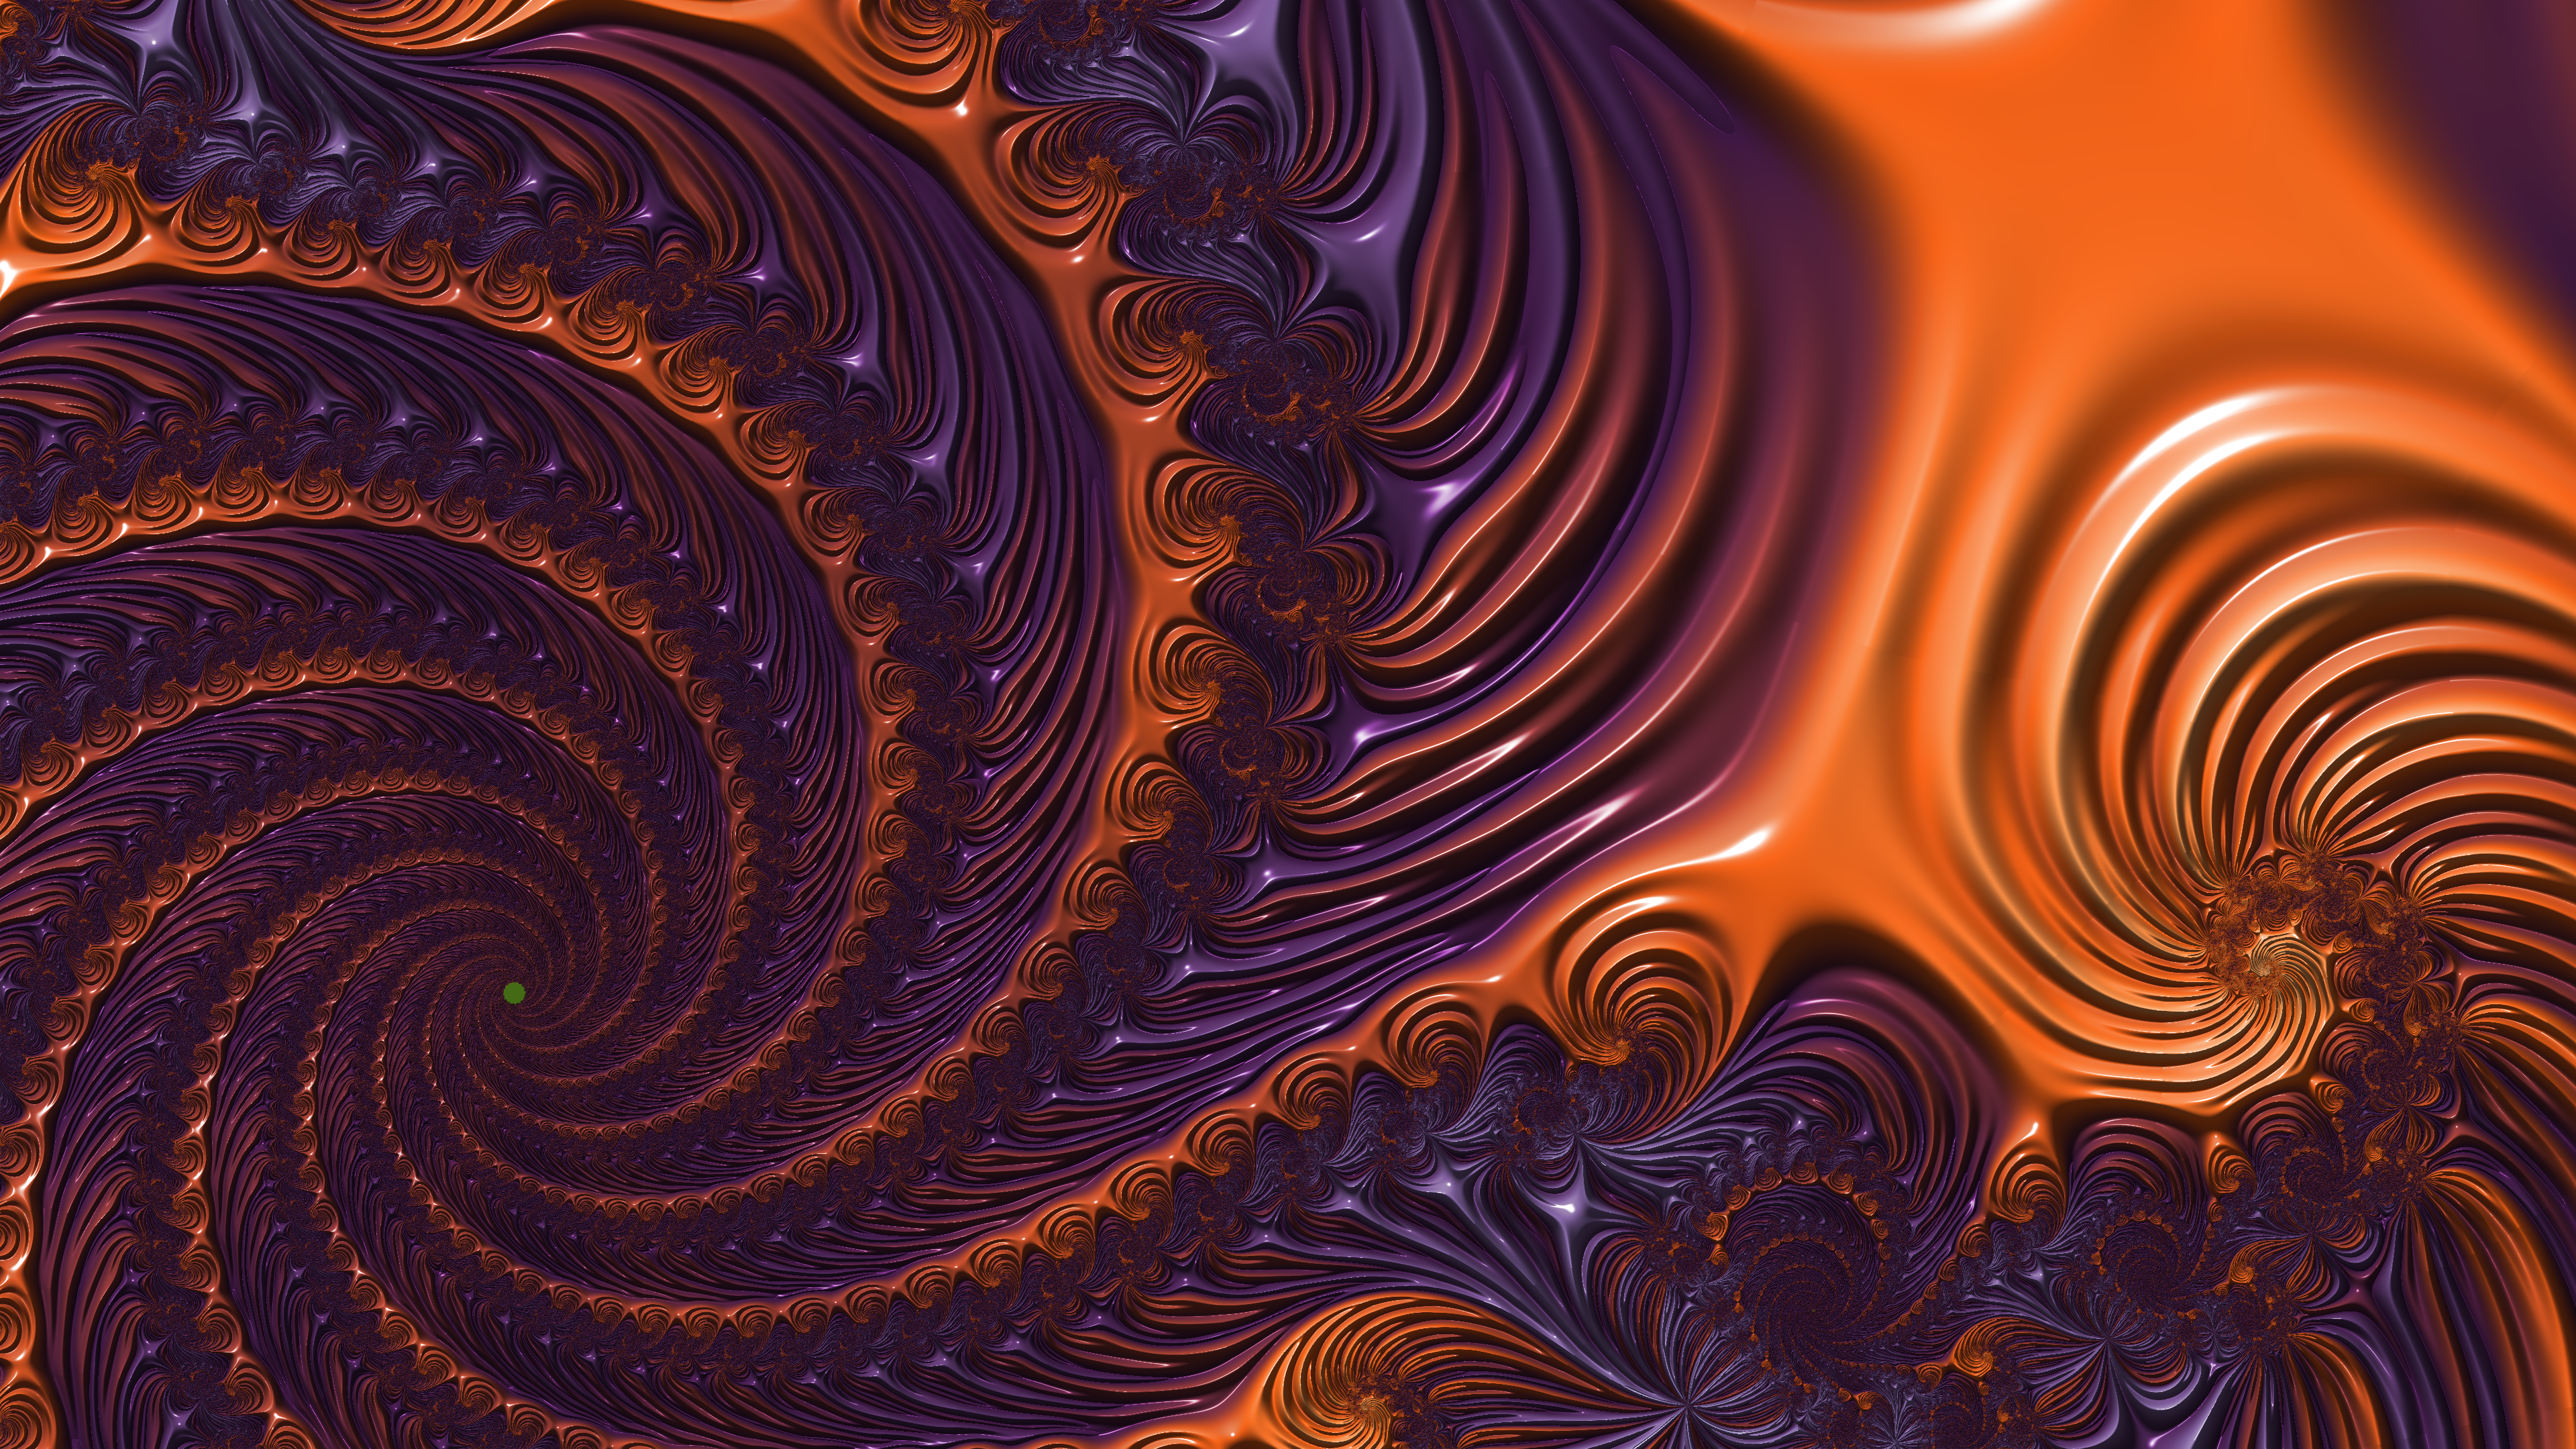 Fractal Art for your Desktop - Colorful Spirals by Dr-Pen on